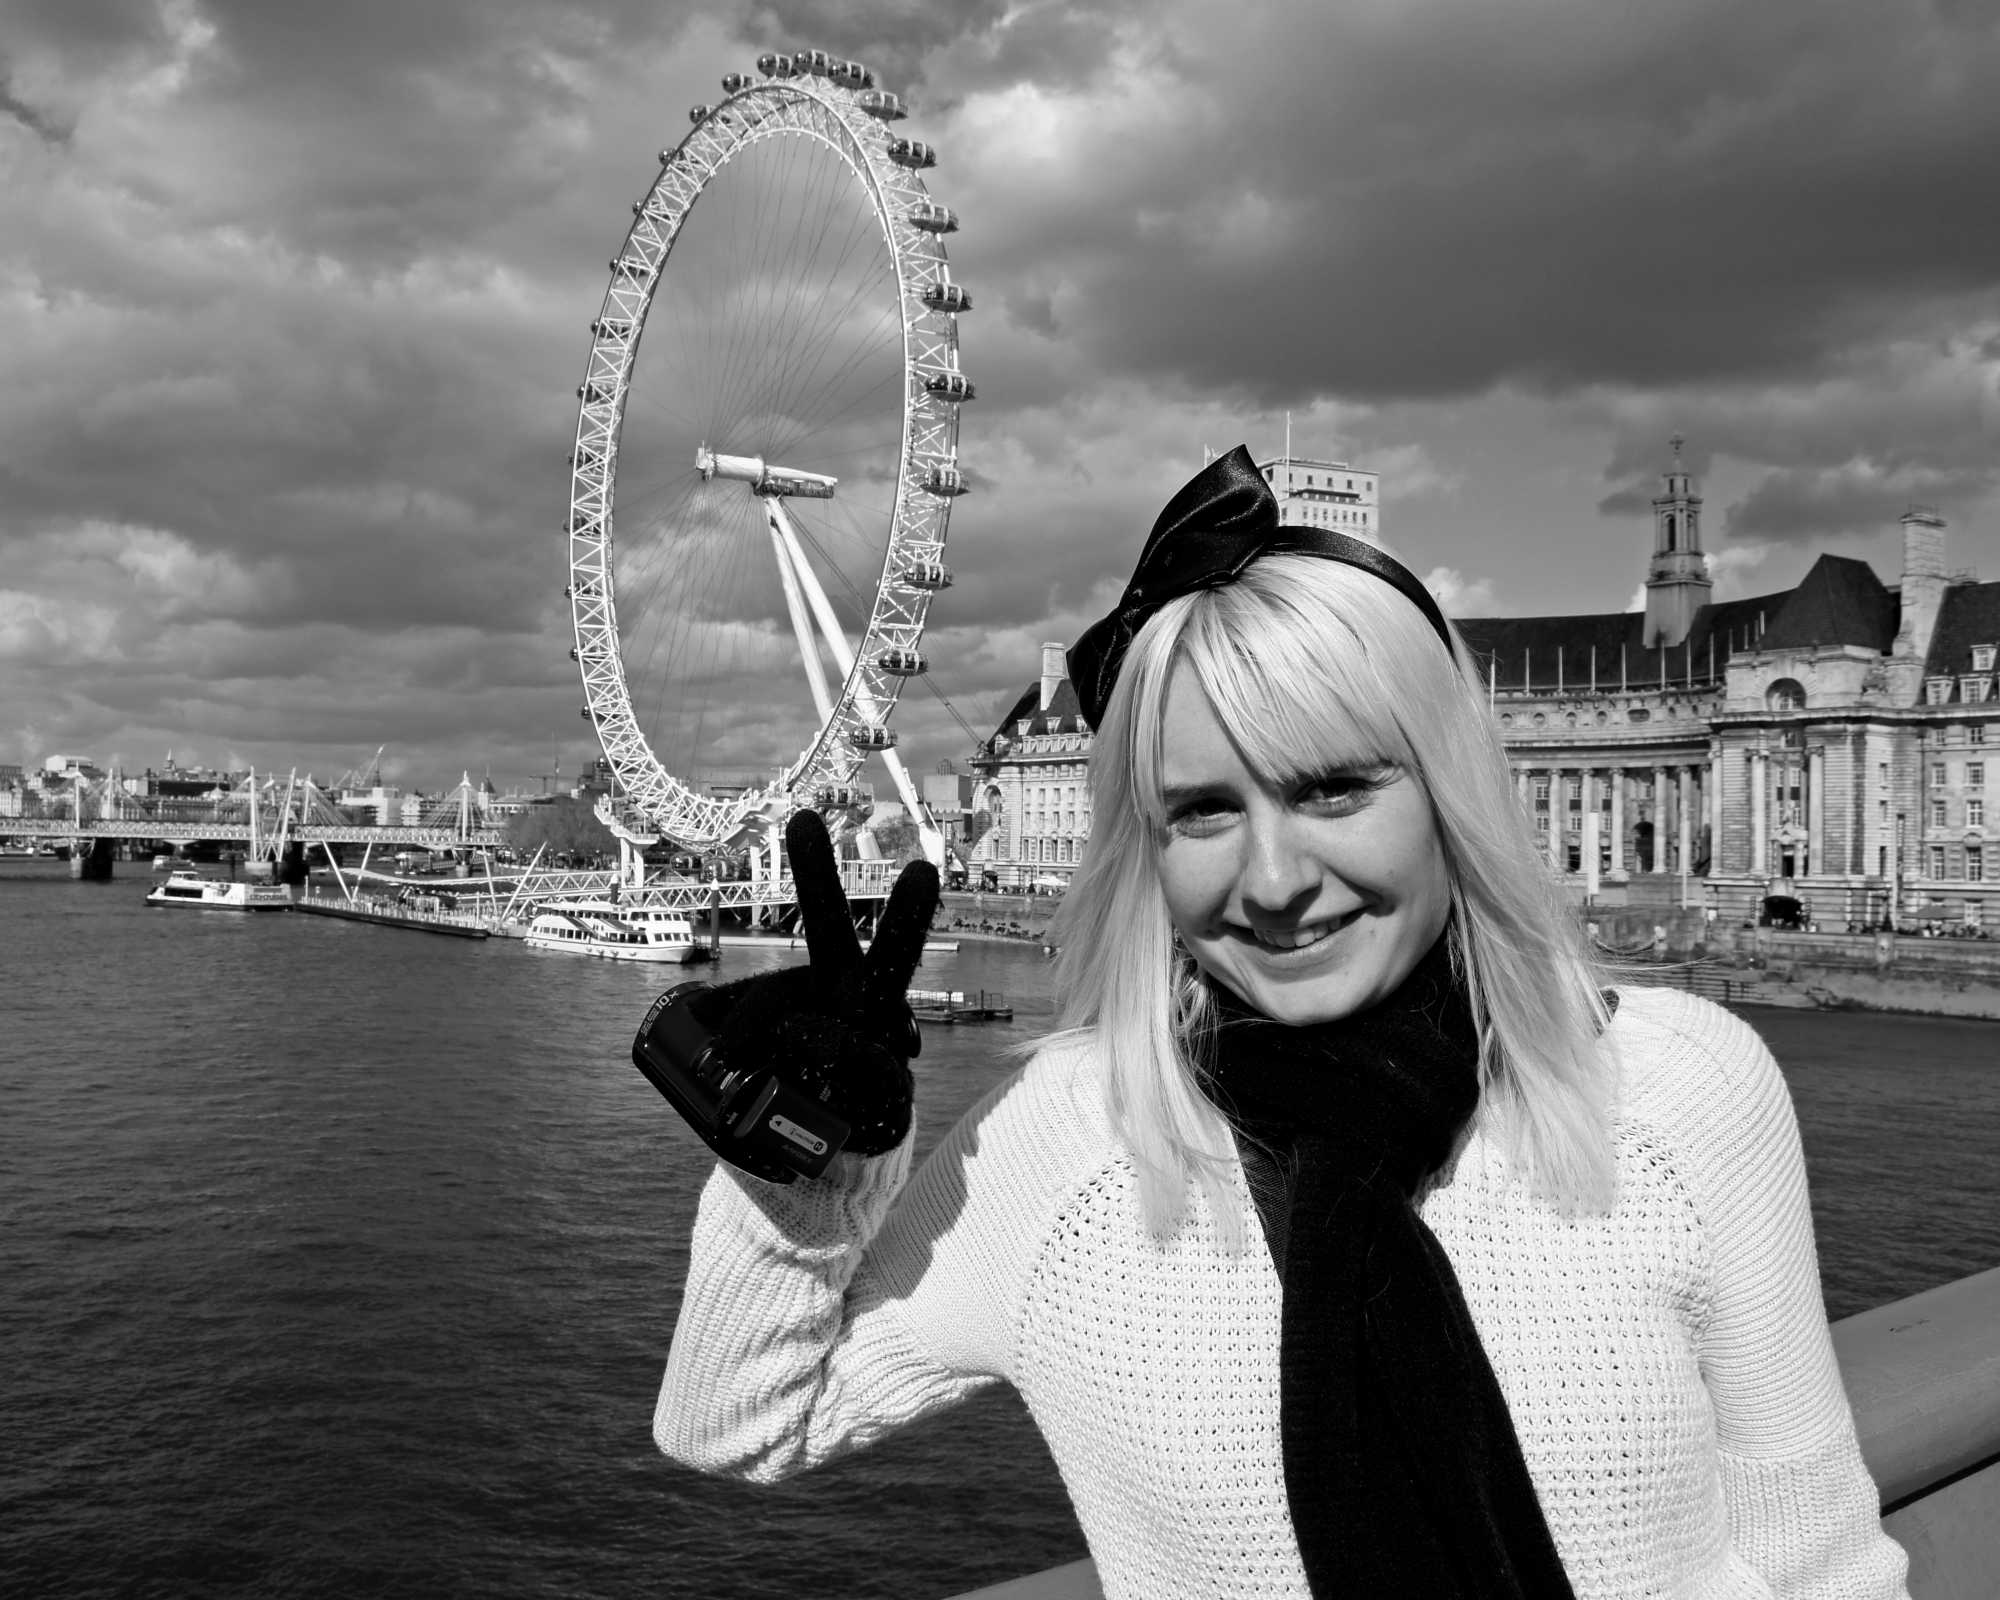 Lisa and the London Eye